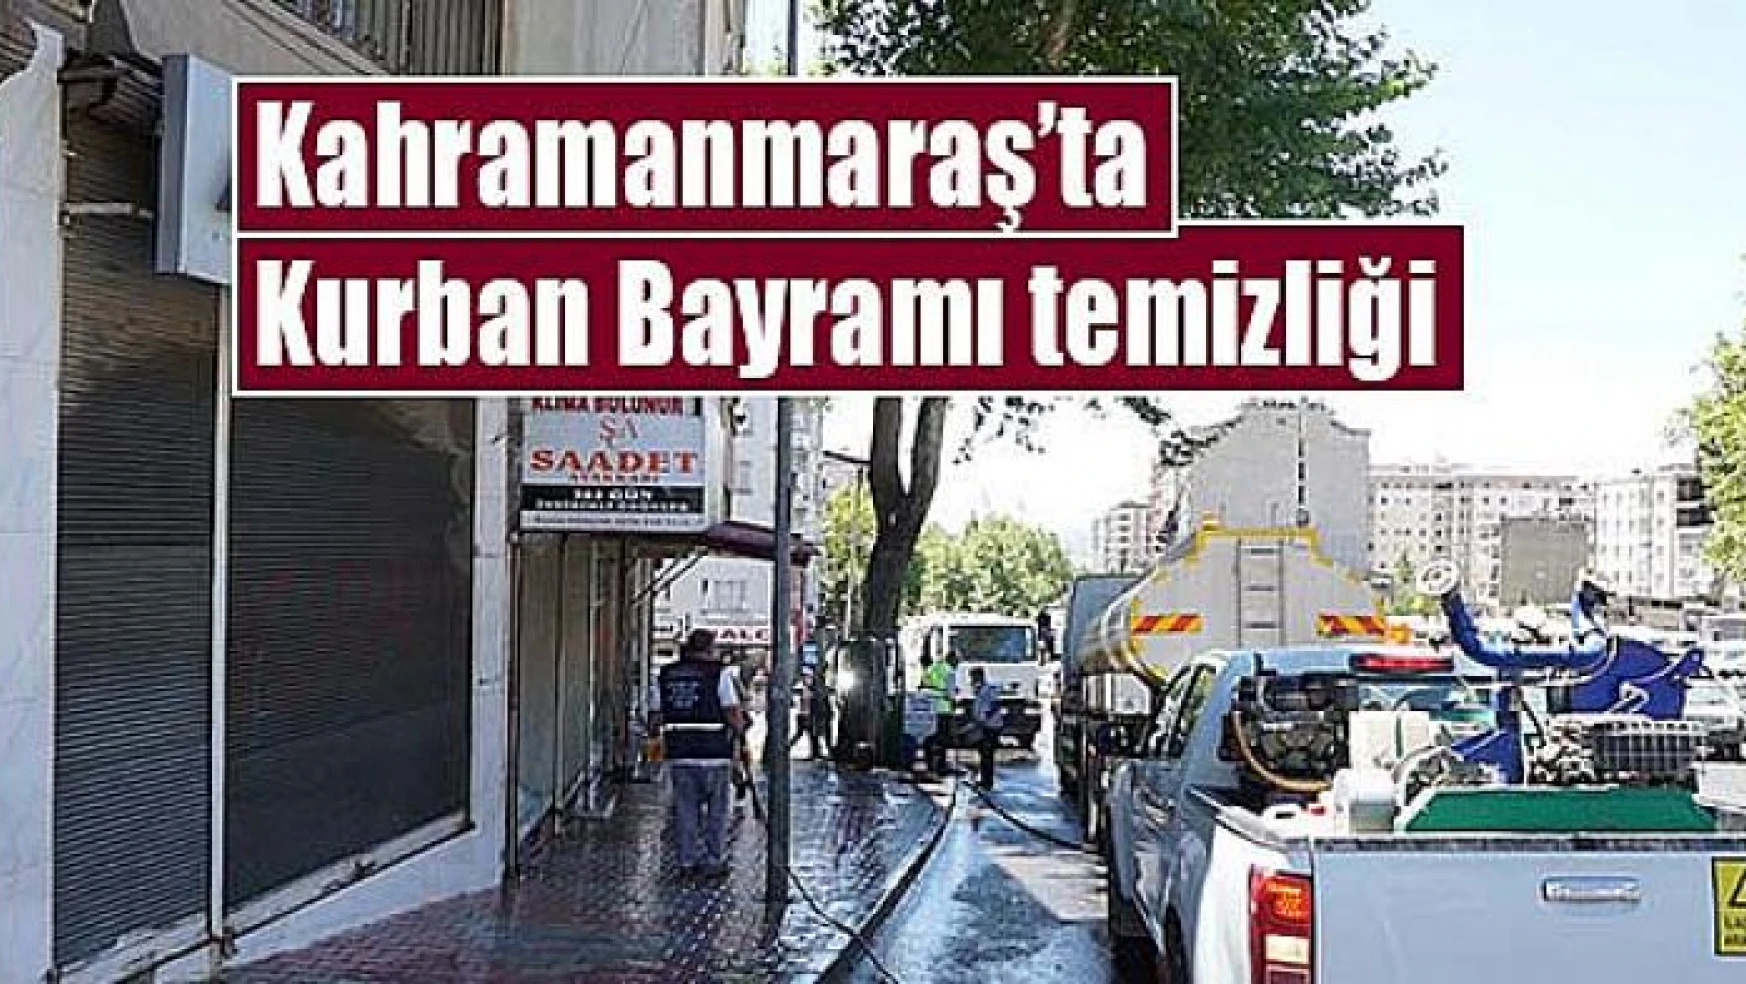 Kahramanmaraş'ta Kurban Bayramı temizliği